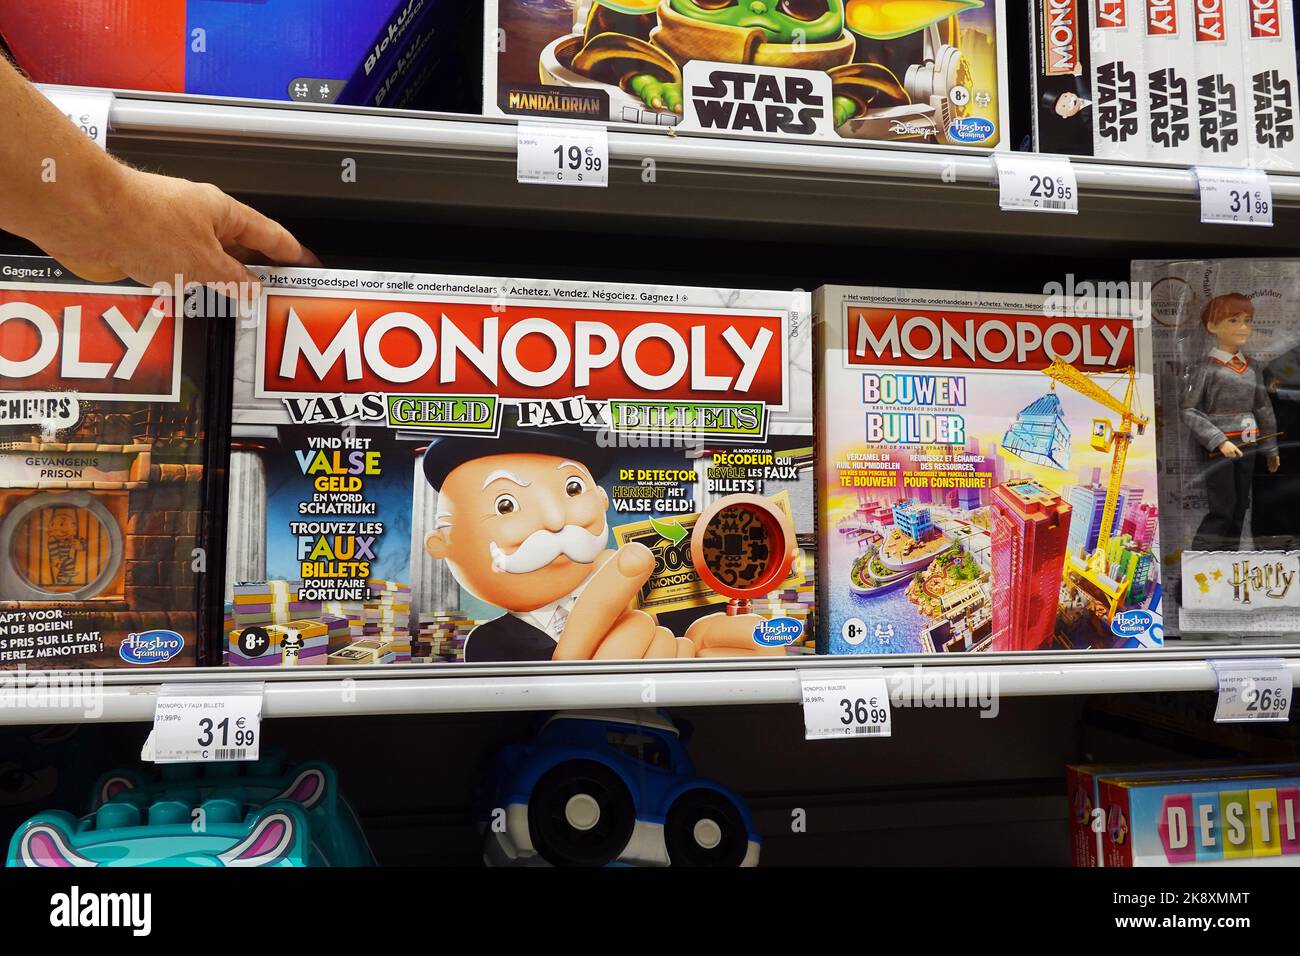 Juegos de mesa Monopoly en una tienda Foto de stock